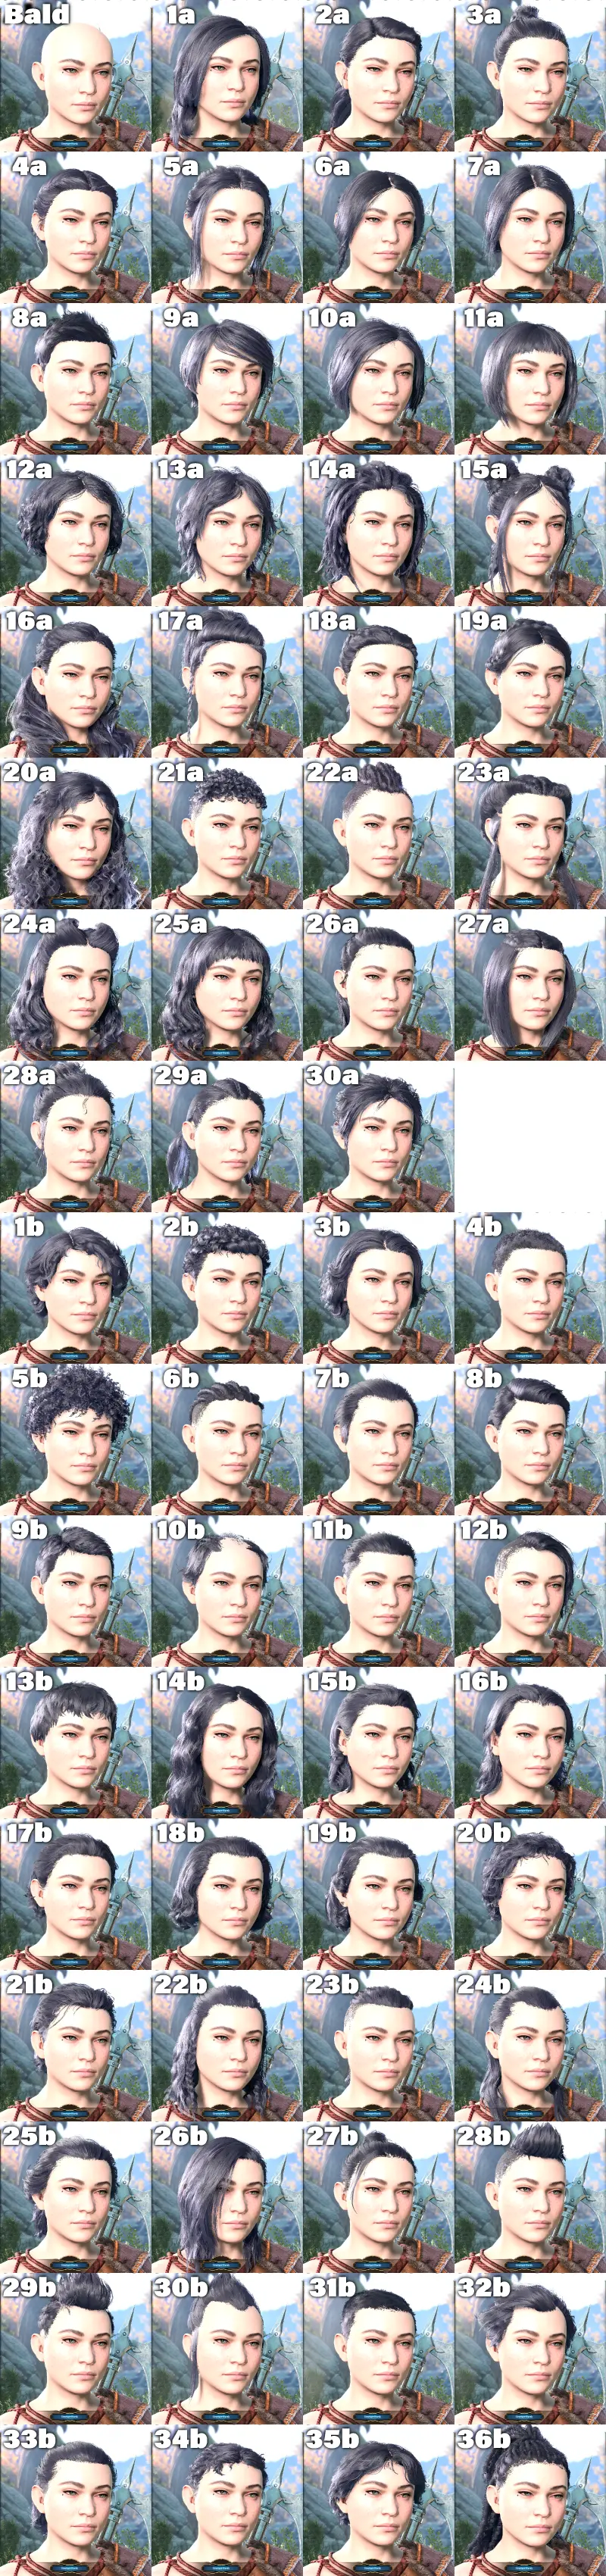 バルダーズゲート3の髪型 ドワーフ女性 67種類の一覧画像